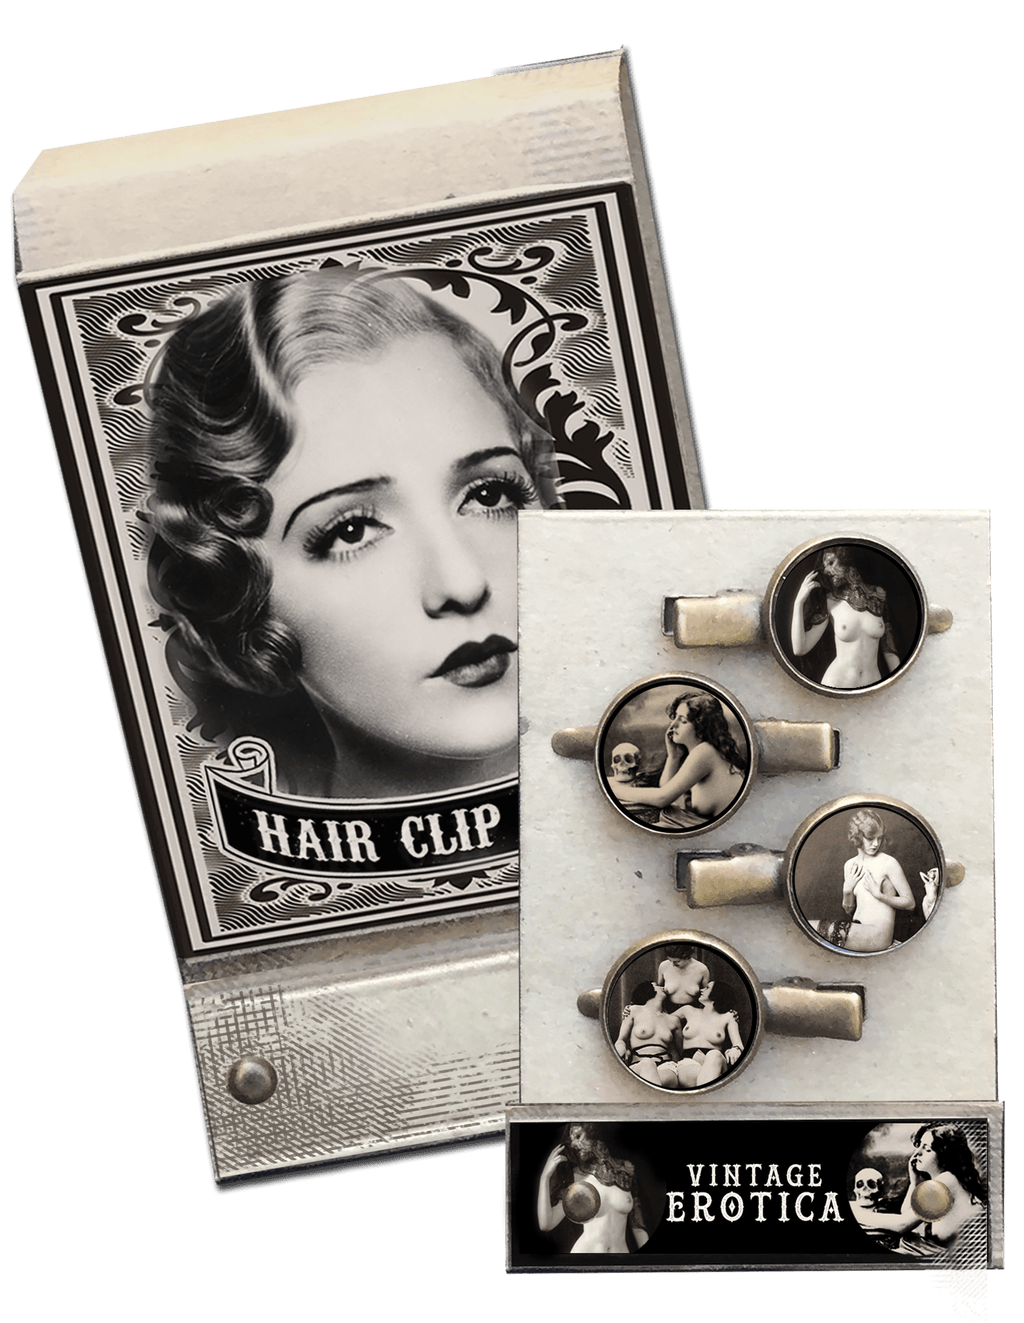 Vintage Erotica Match Book Hair Clips - Se7en Deadly